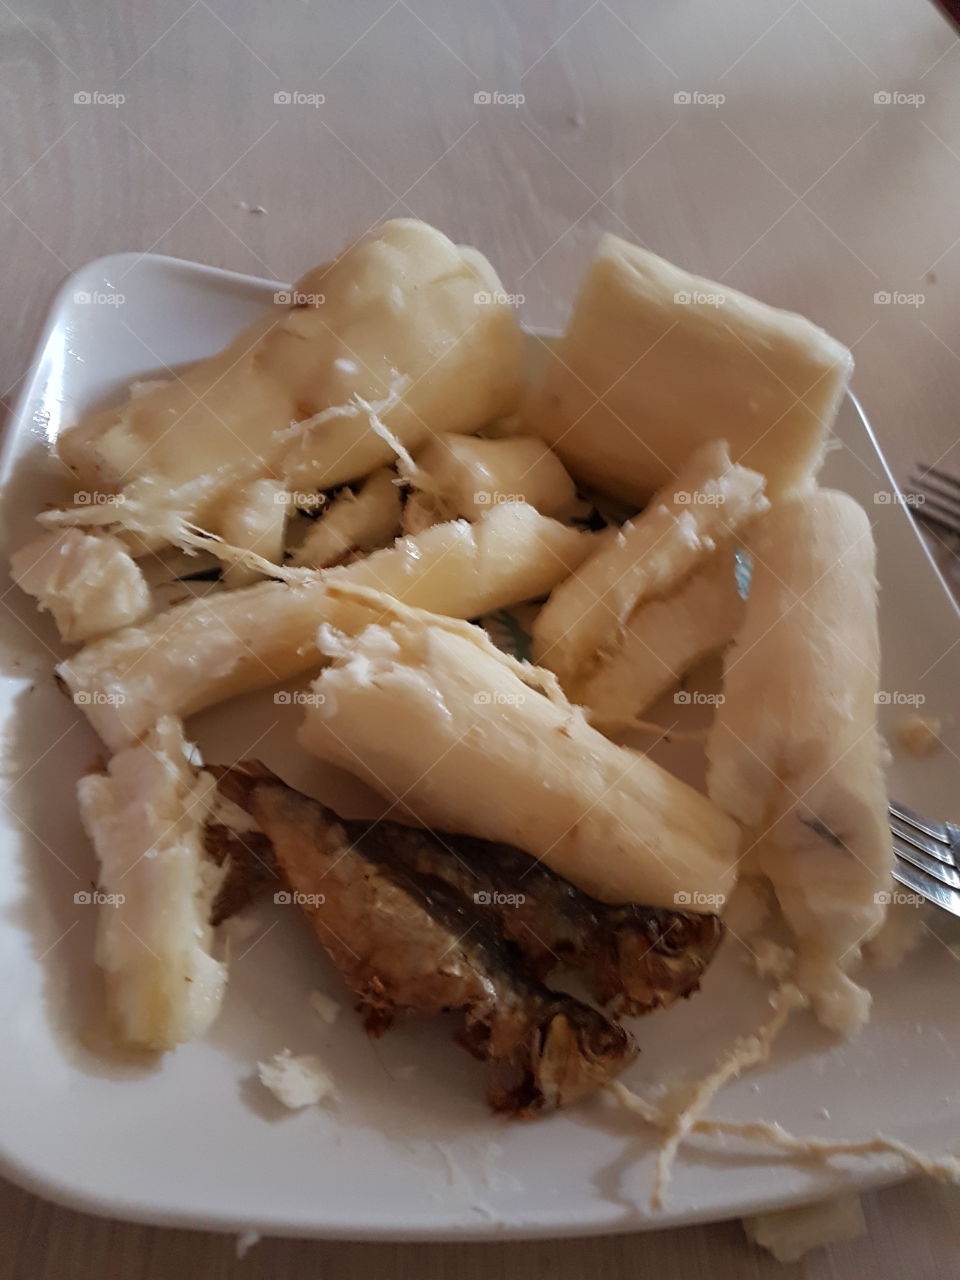 native cassava food